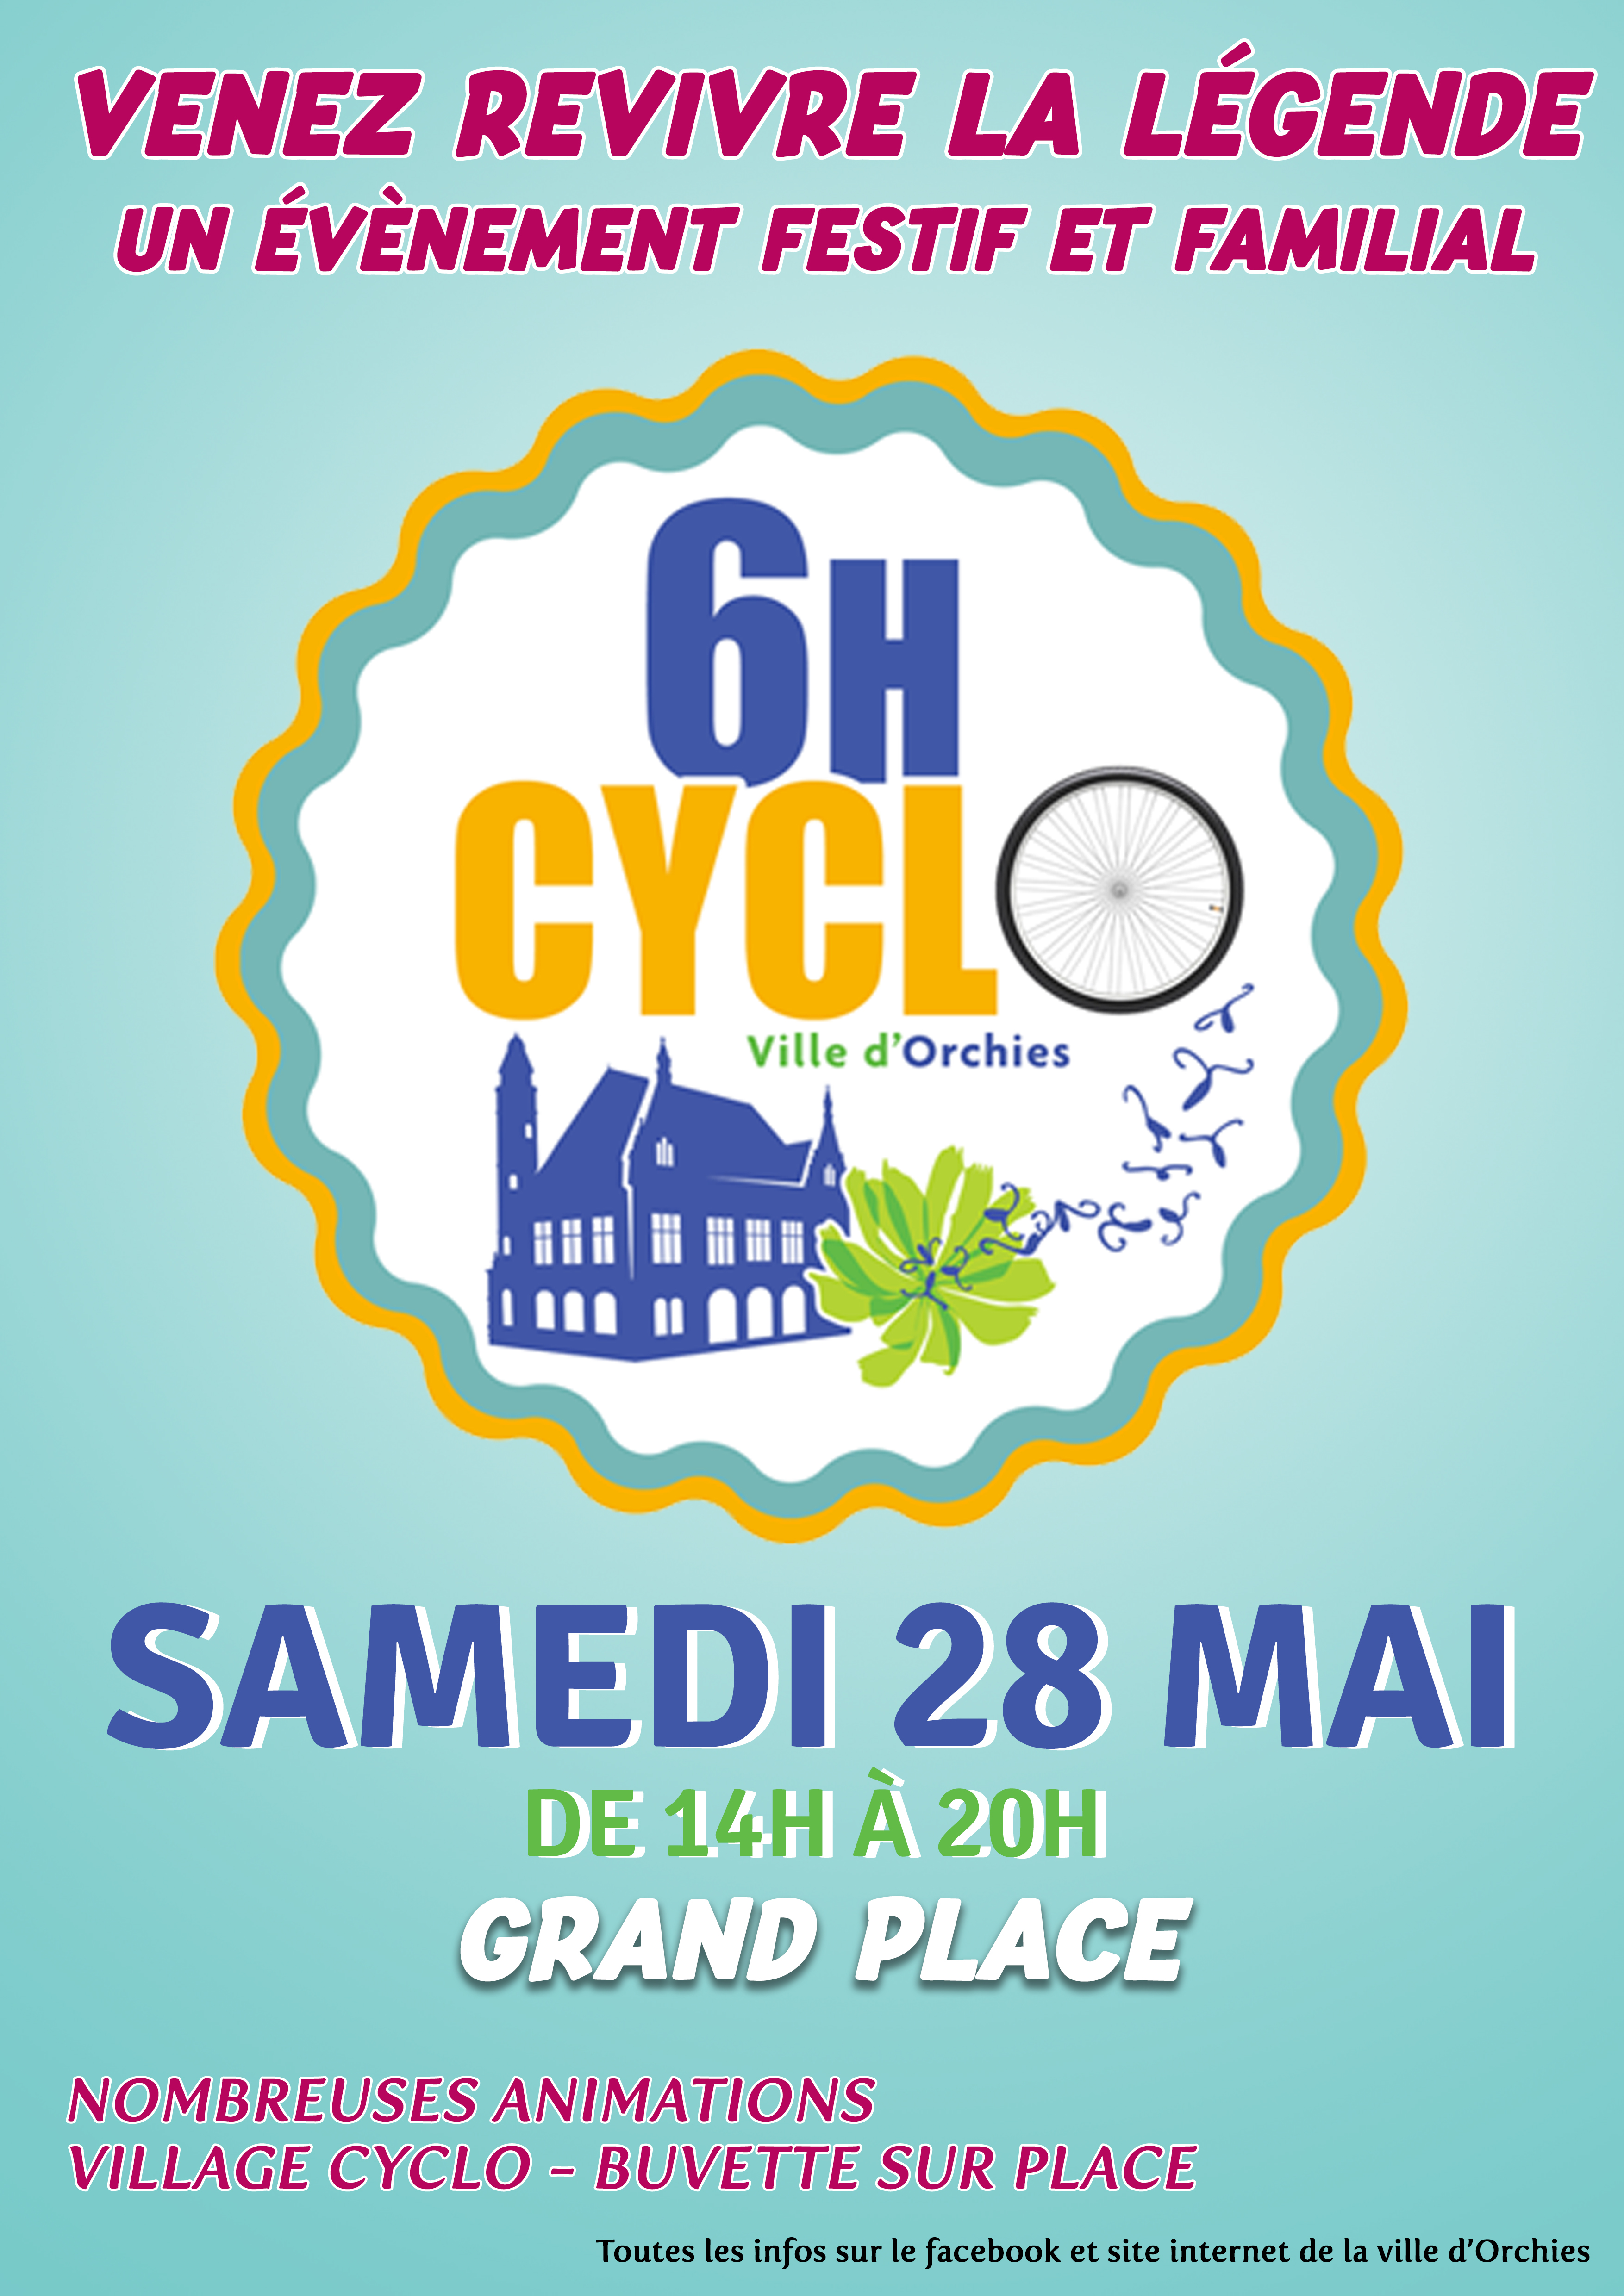 6h Cyclo